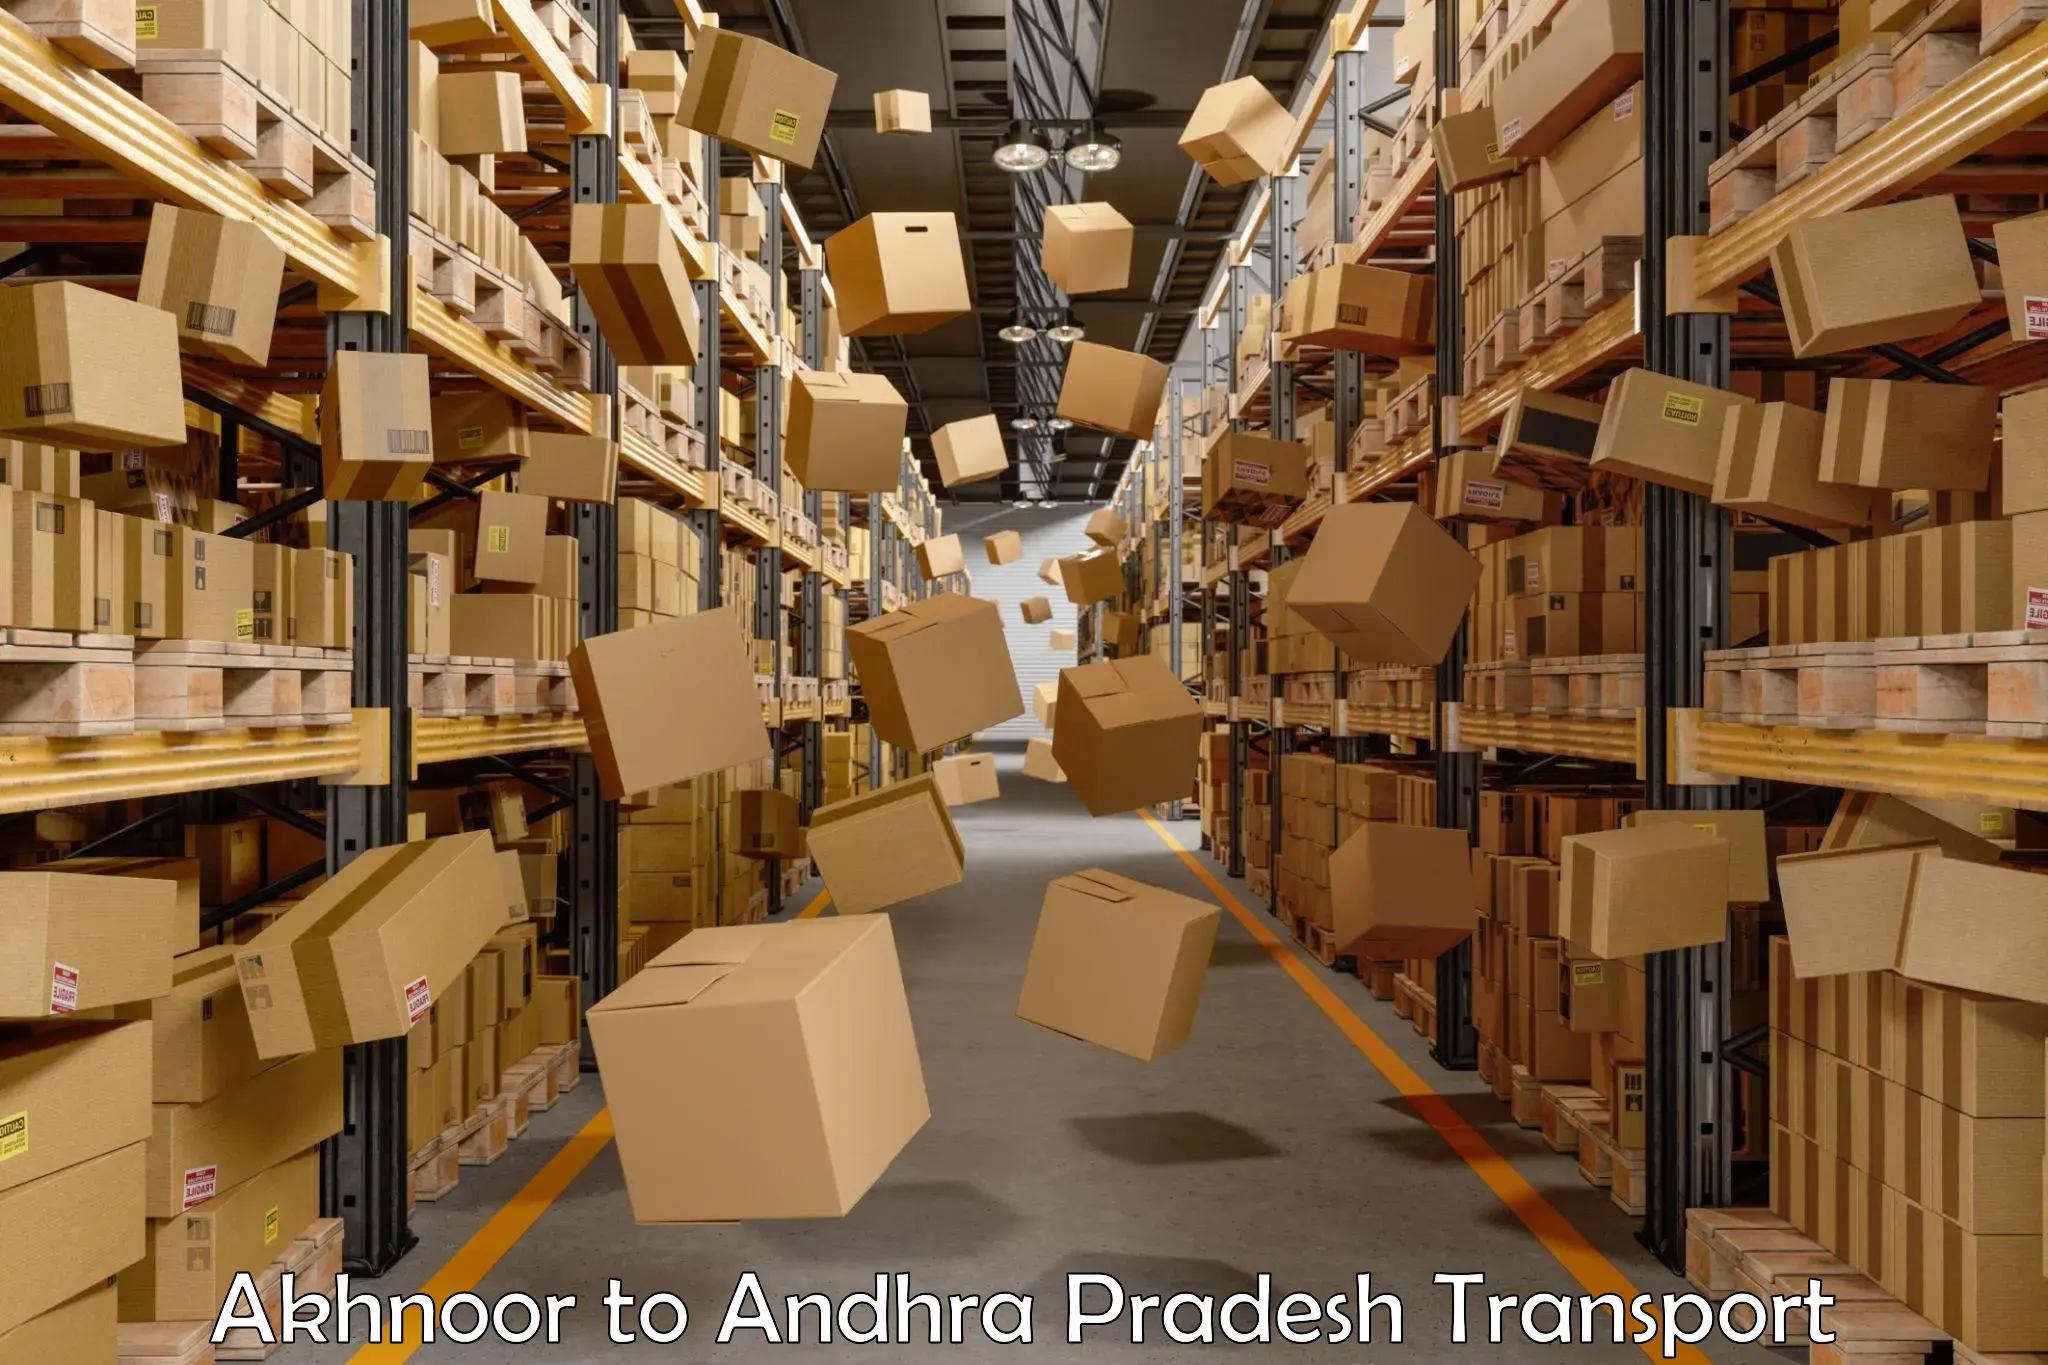 Cargo train transport services Akhnoor to Andhra Pradesh